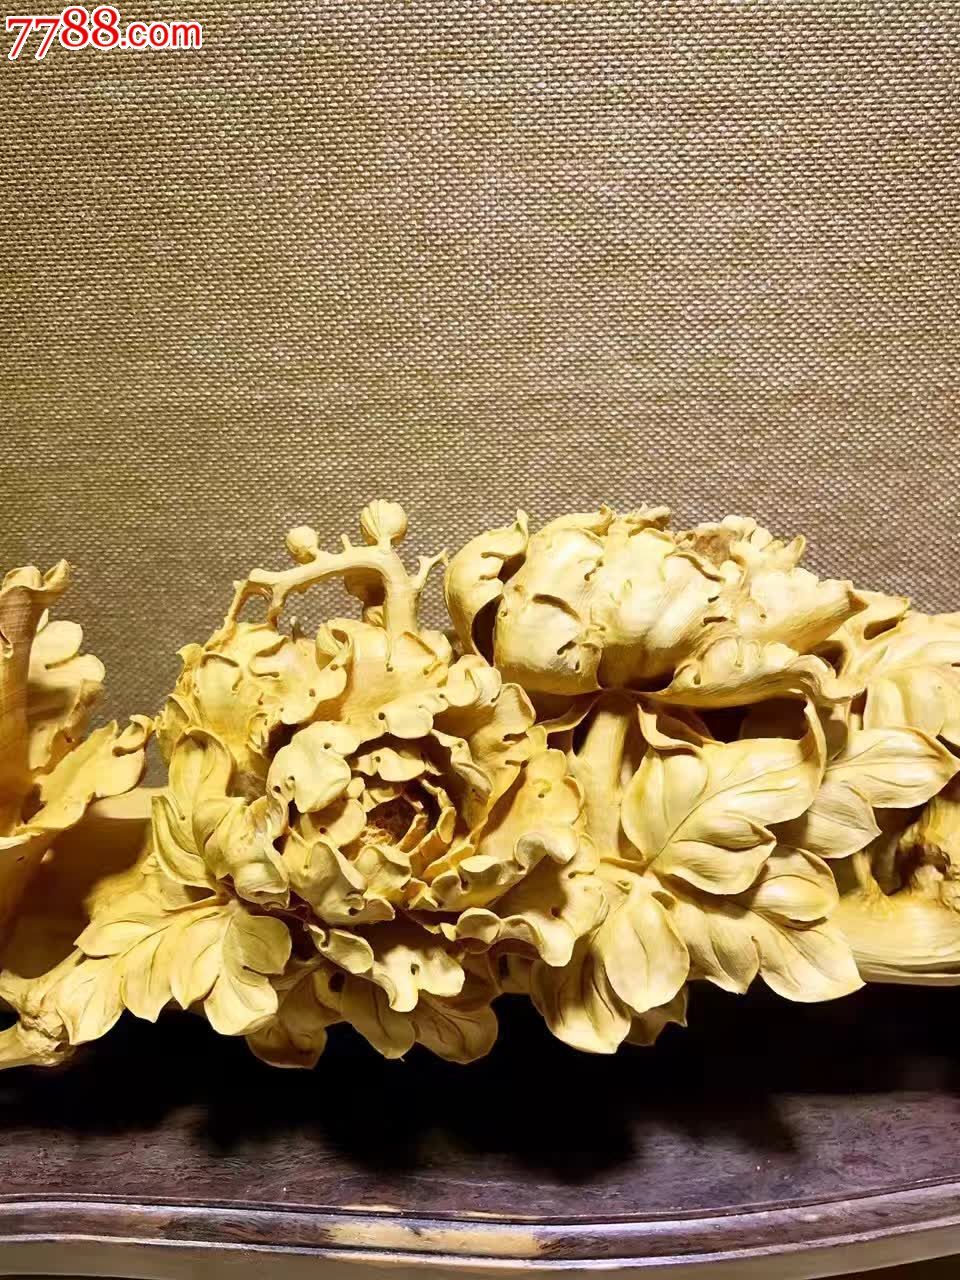 潮州木雕牡丹图片